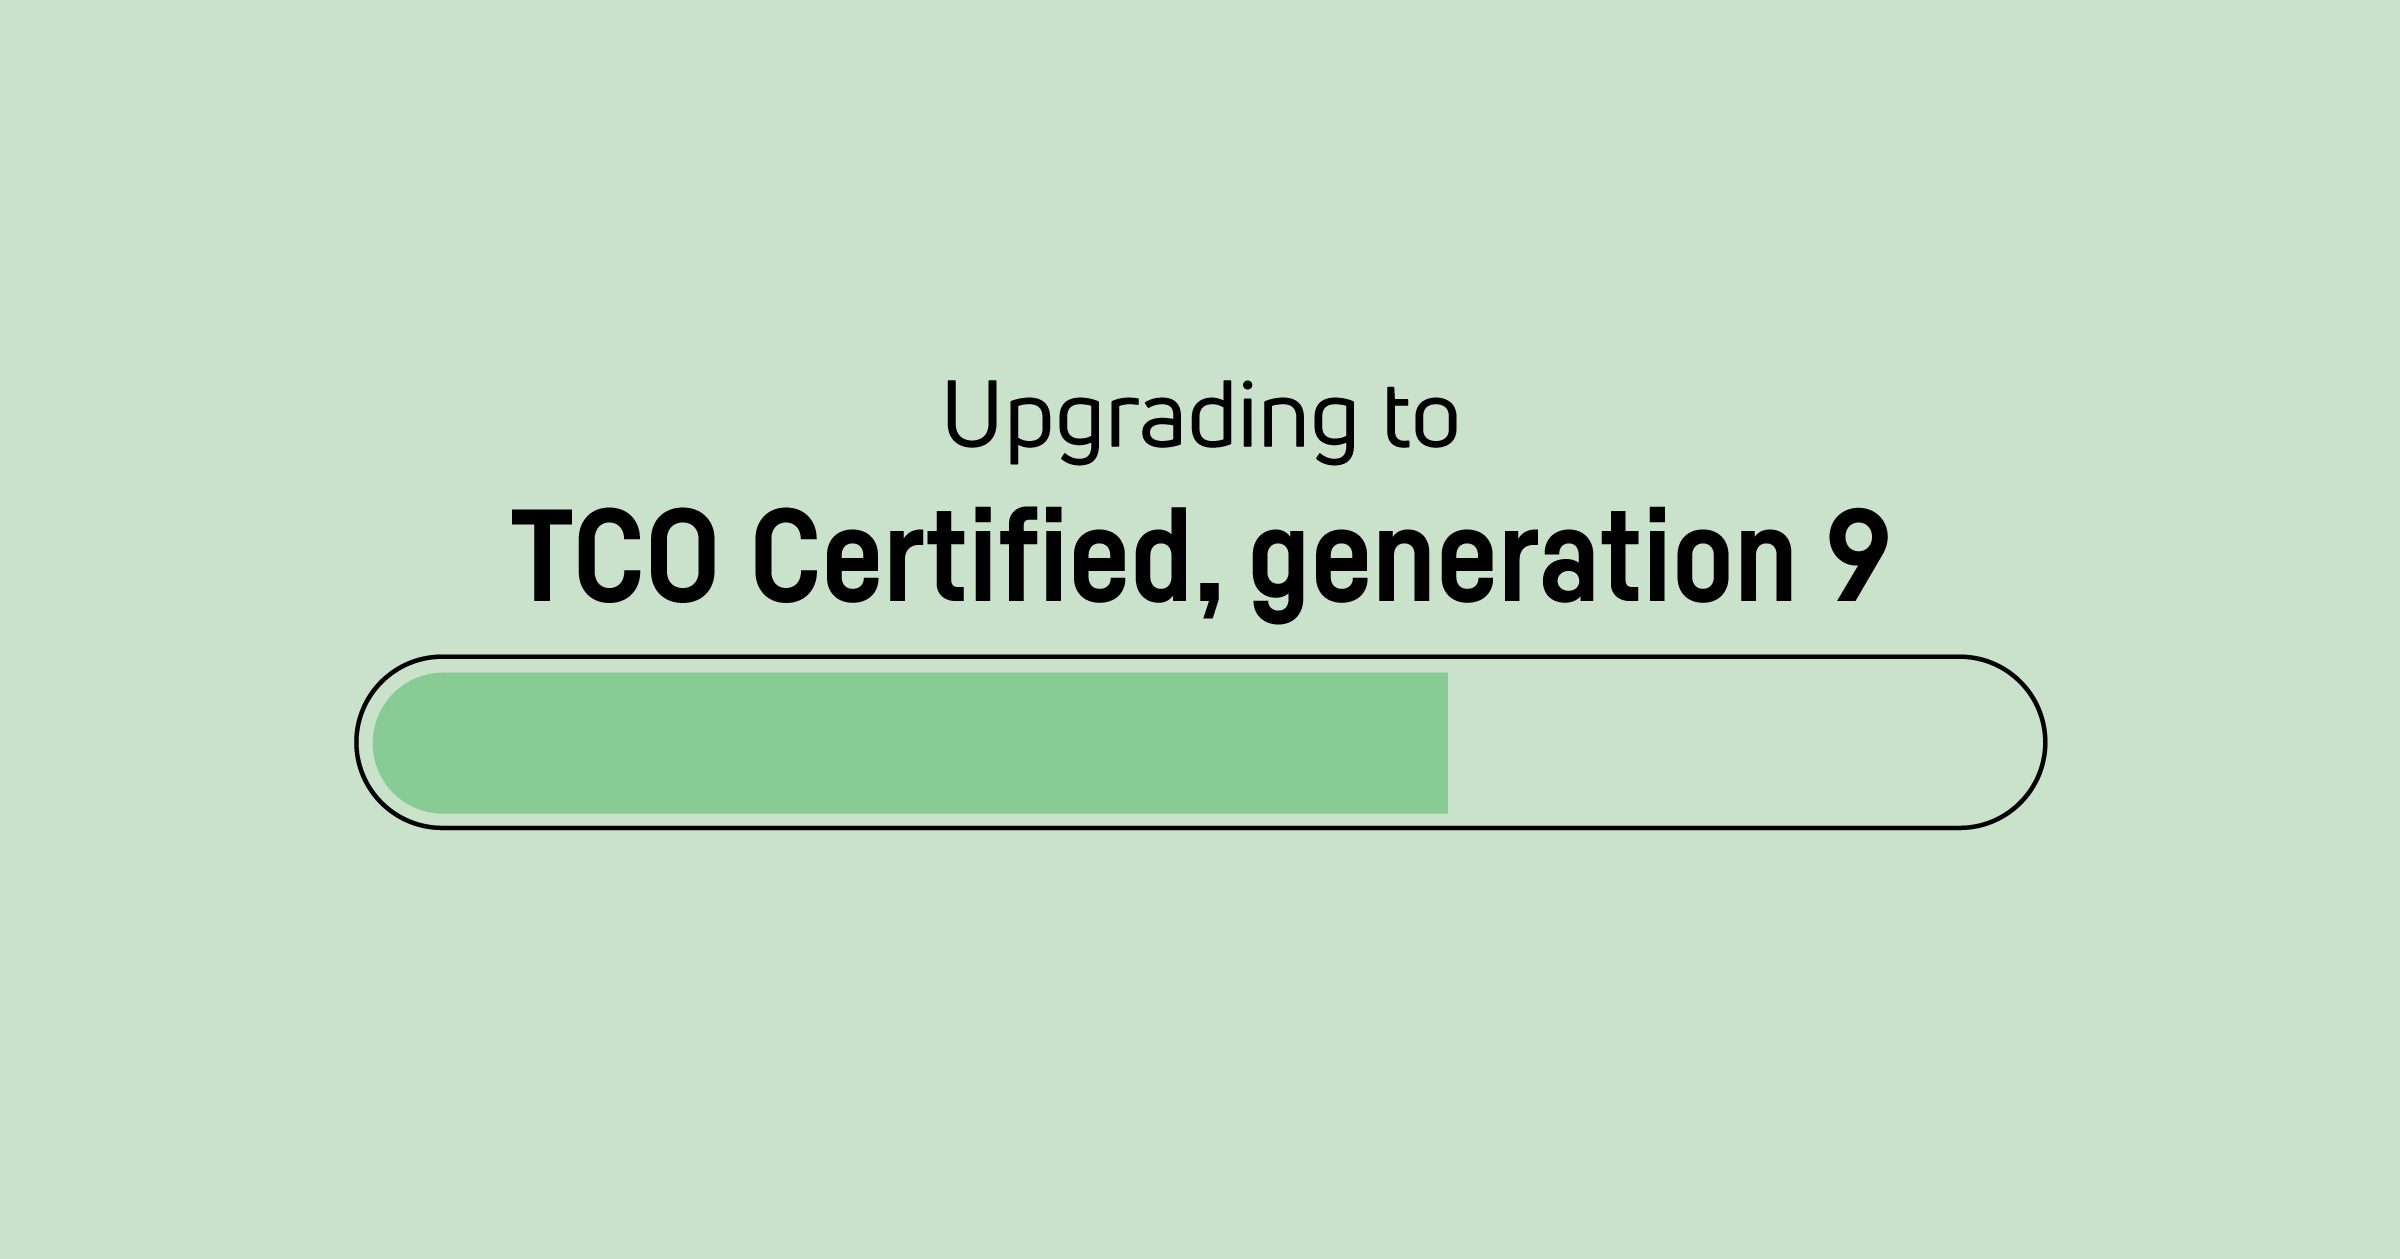 È ora di aggiornare i certificati TCO Certified, generation 8